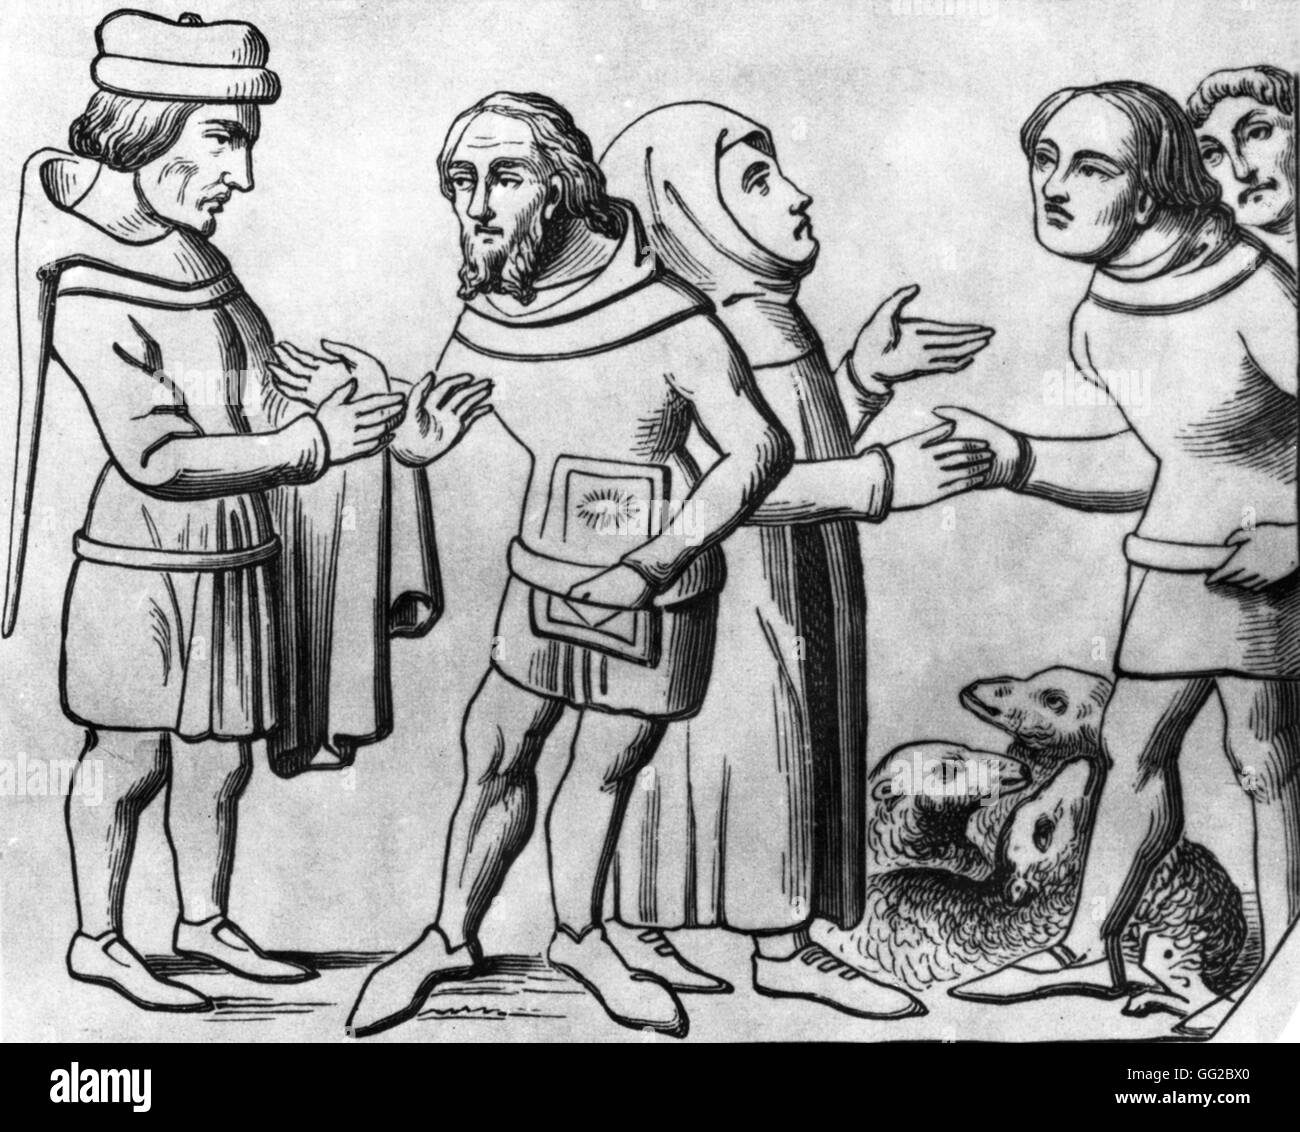 Les marchands au Moyen Âge, la France Miniature Banque D'Images